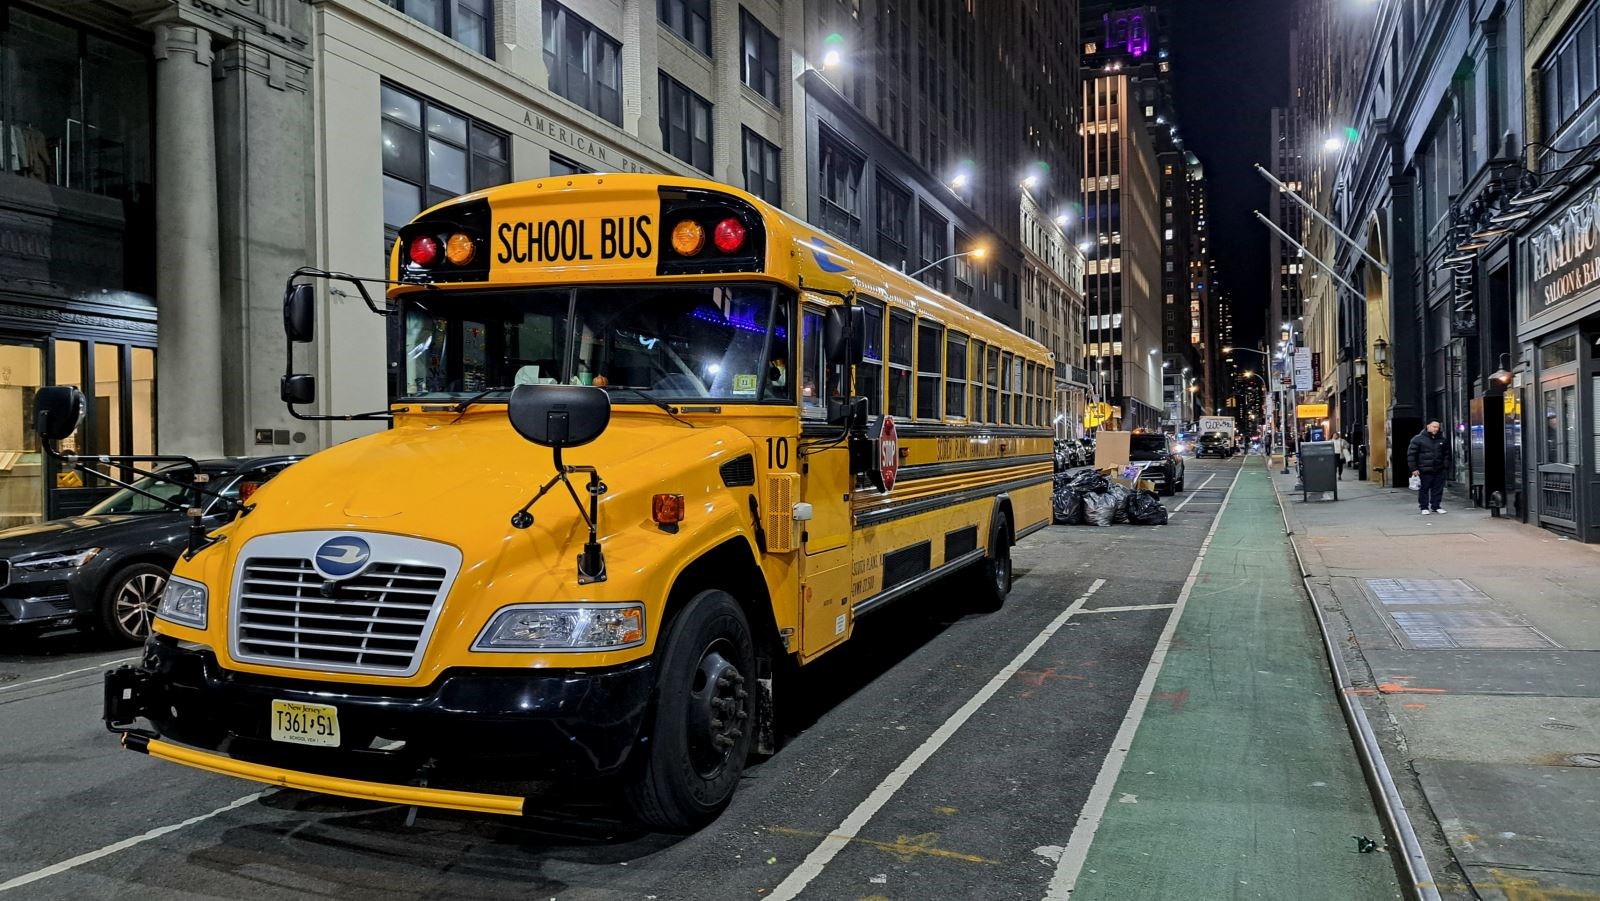 New York school bus by Duncan Meecham.